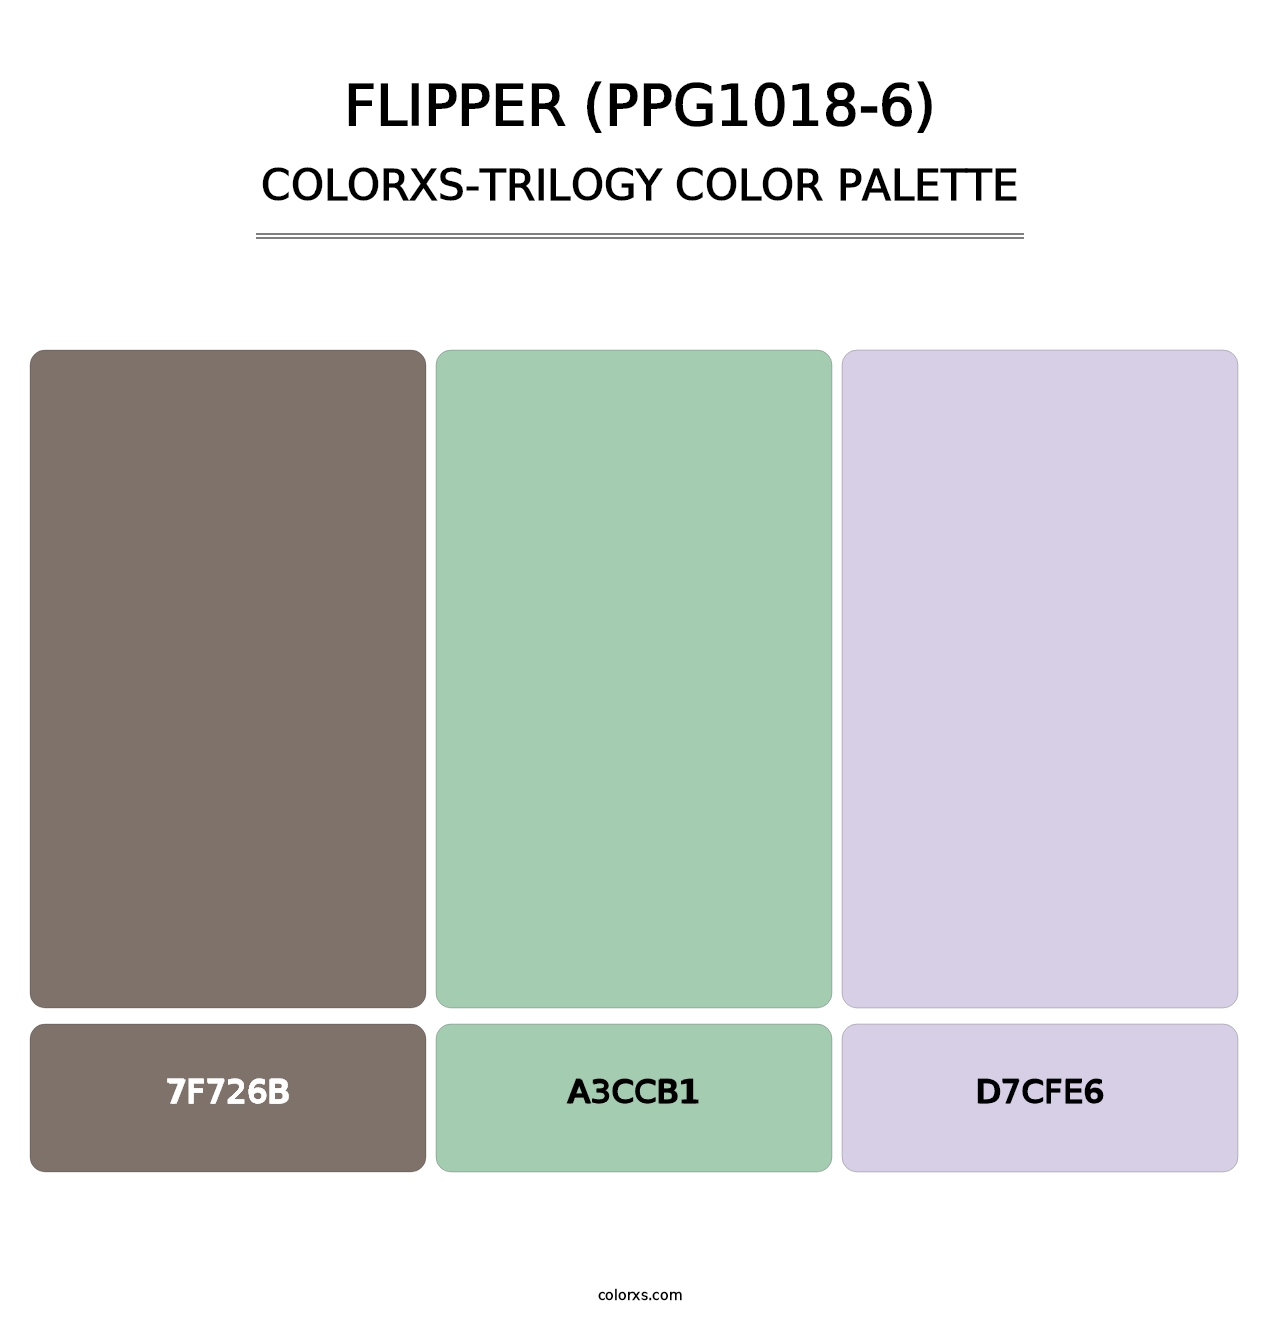 Flipper (PPG1018-6) - Colorxs Trilogy Palette